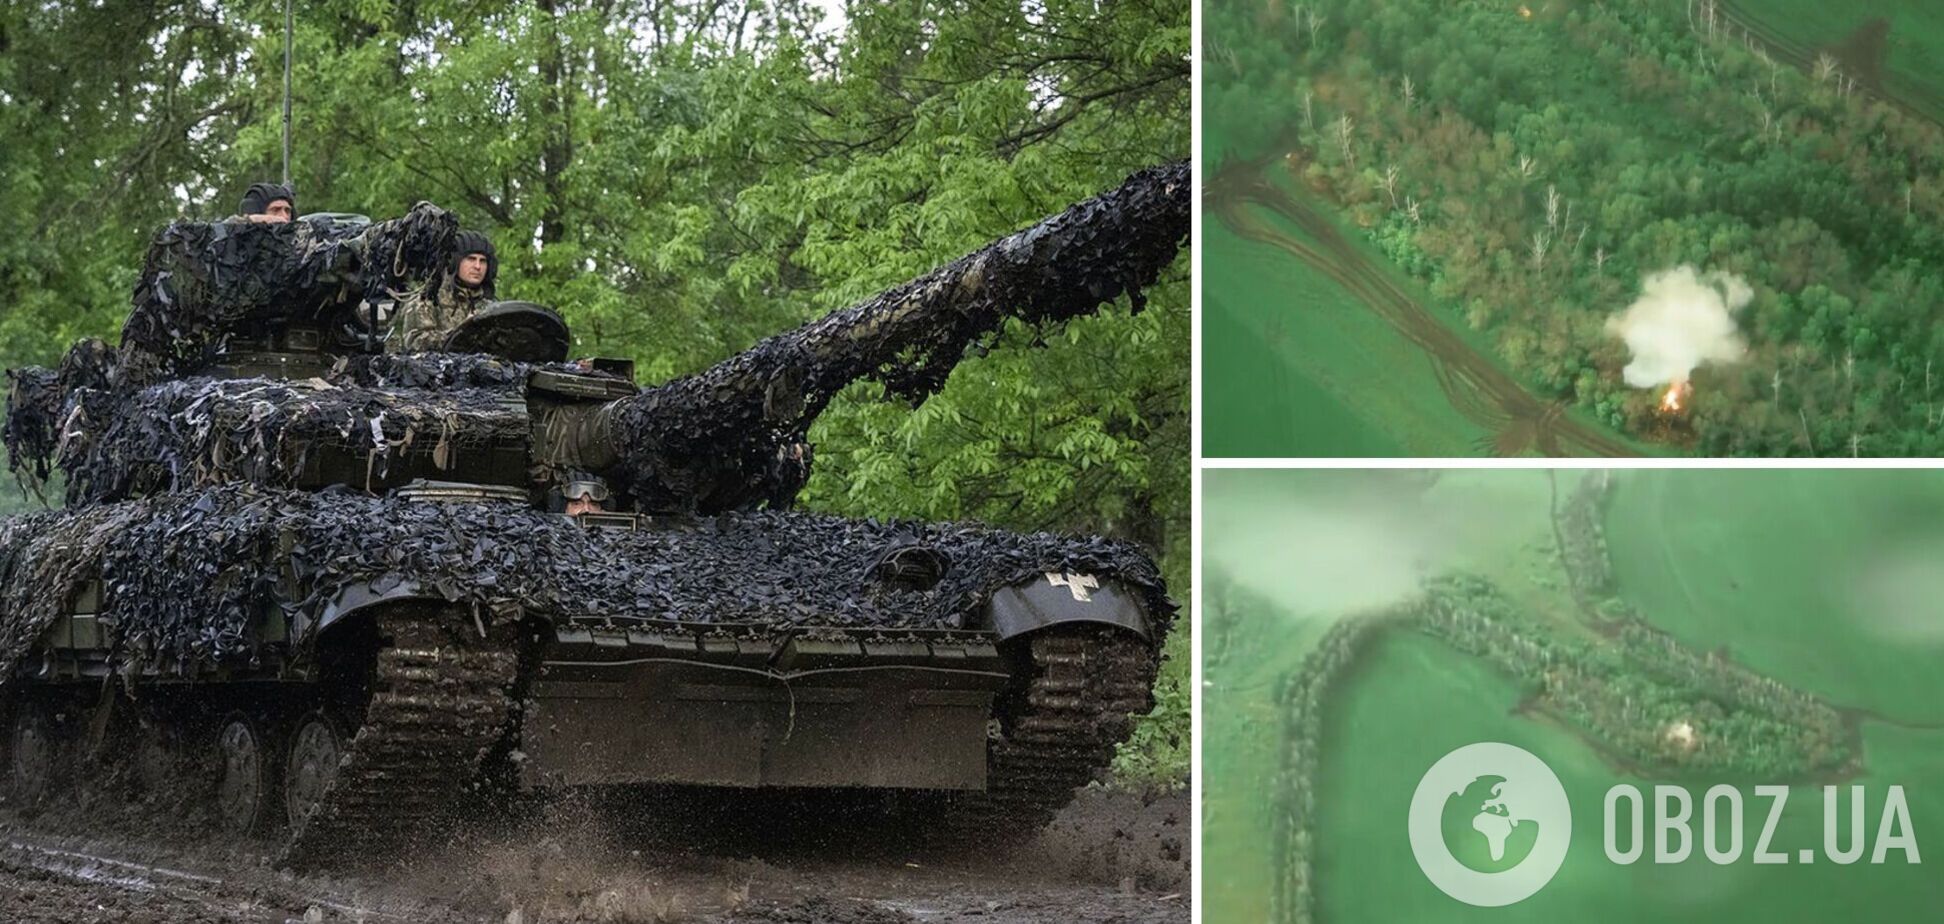 'Со счетом 4:0!' Украинские воины разгромили команду вражеских гаубиц. Видео